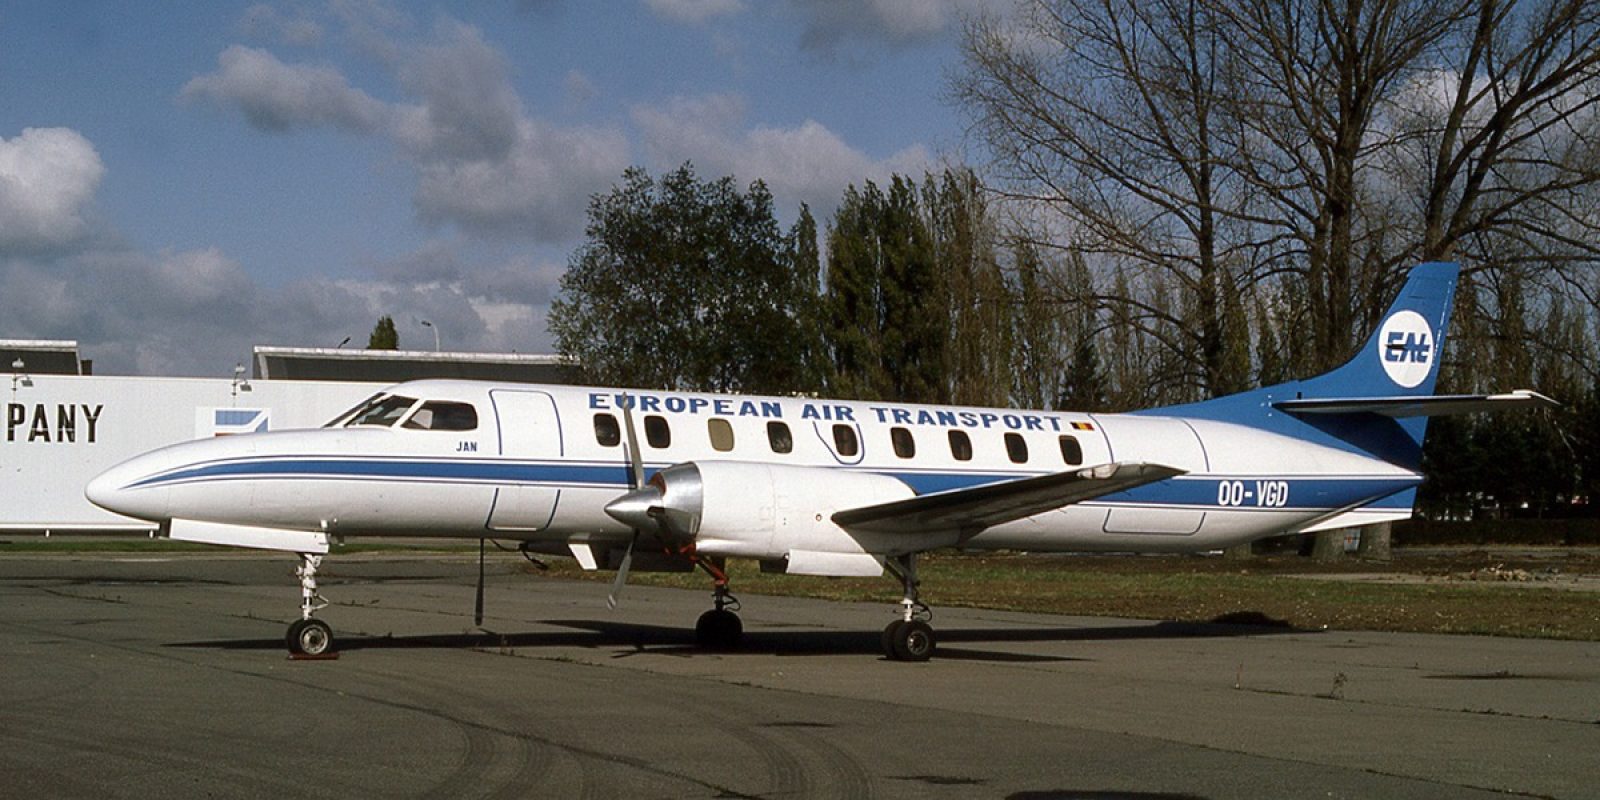 L’arrivée de Freddy Van Gaever à la direction d’EAT permet de disposer de trois Fairchild-Swearingen SA-226AT Merlin IVA. Ils ont été acquis auprès de la compagnie yougoslave JAT via la société de location d’avions Frevag. Le OO-VGD (msn AT-062-2 ex YU-ALF) est photographié fin 1986 aux couleurs d’European Air Transport et baptisé « Jan », prénom du fil de Freddy Van Gaever et pilote de ligne.